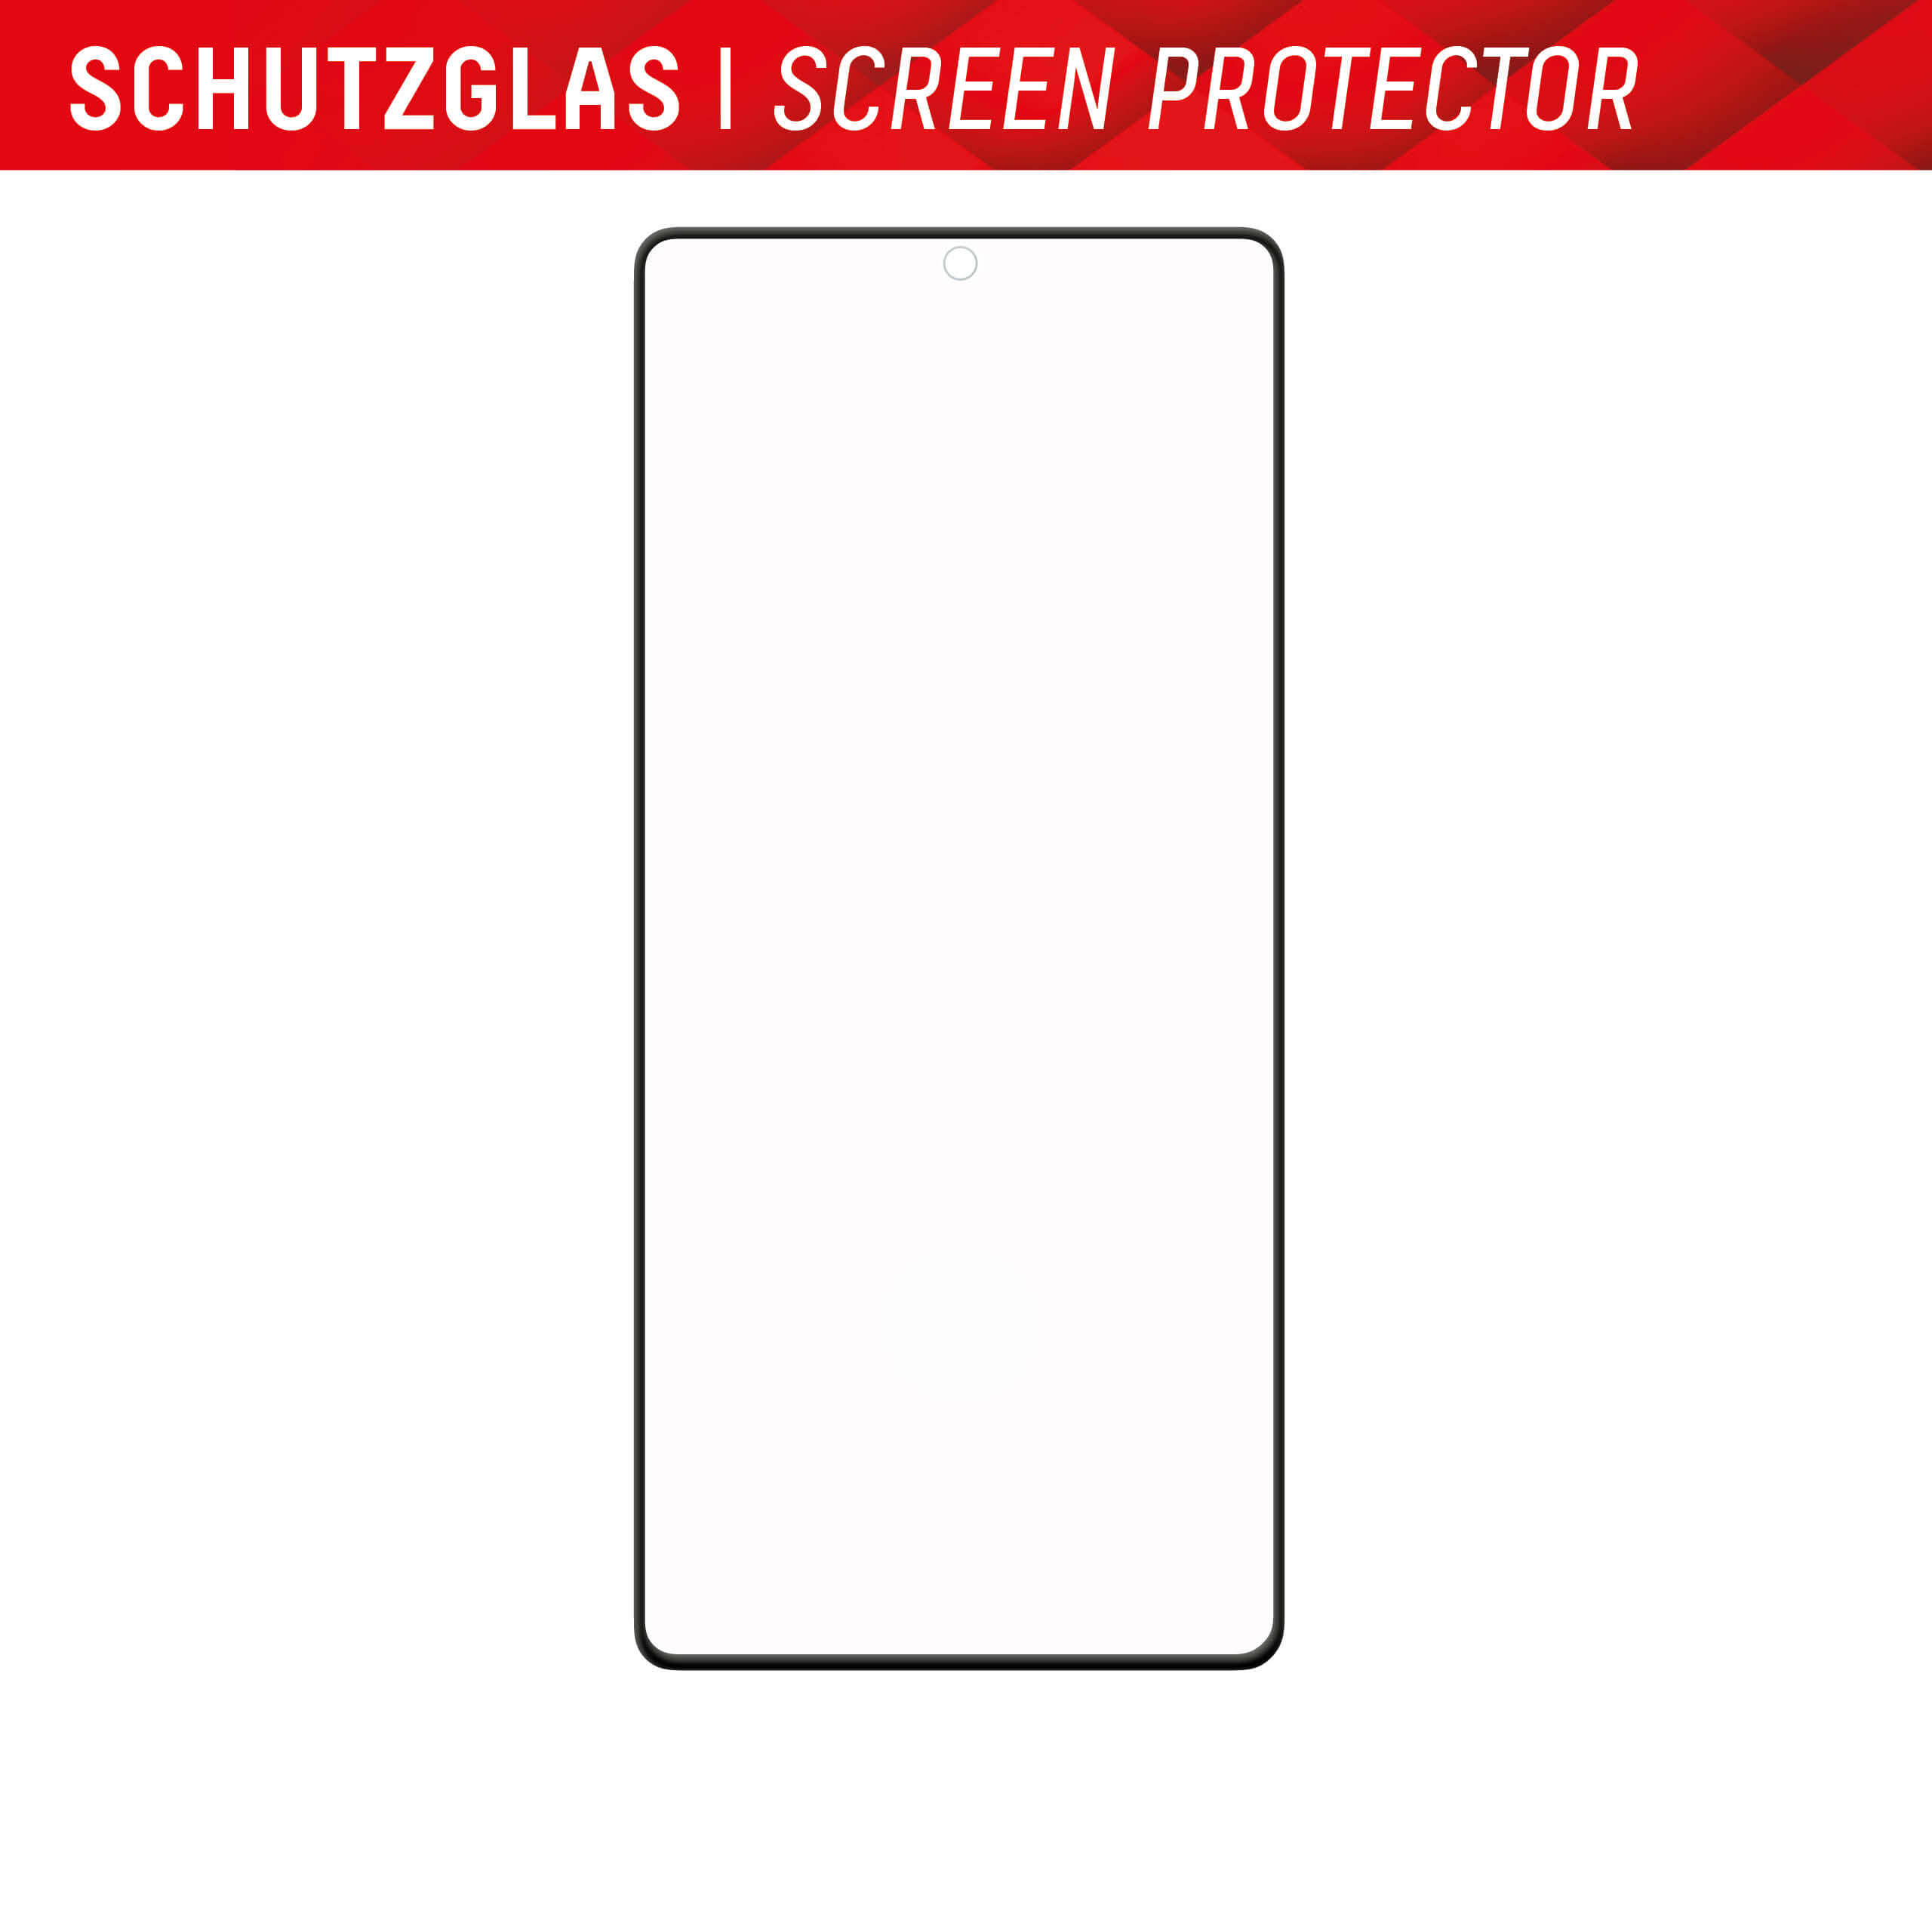 DISPLEX Glas + Case für Samsung Galaxy S23 Ultra